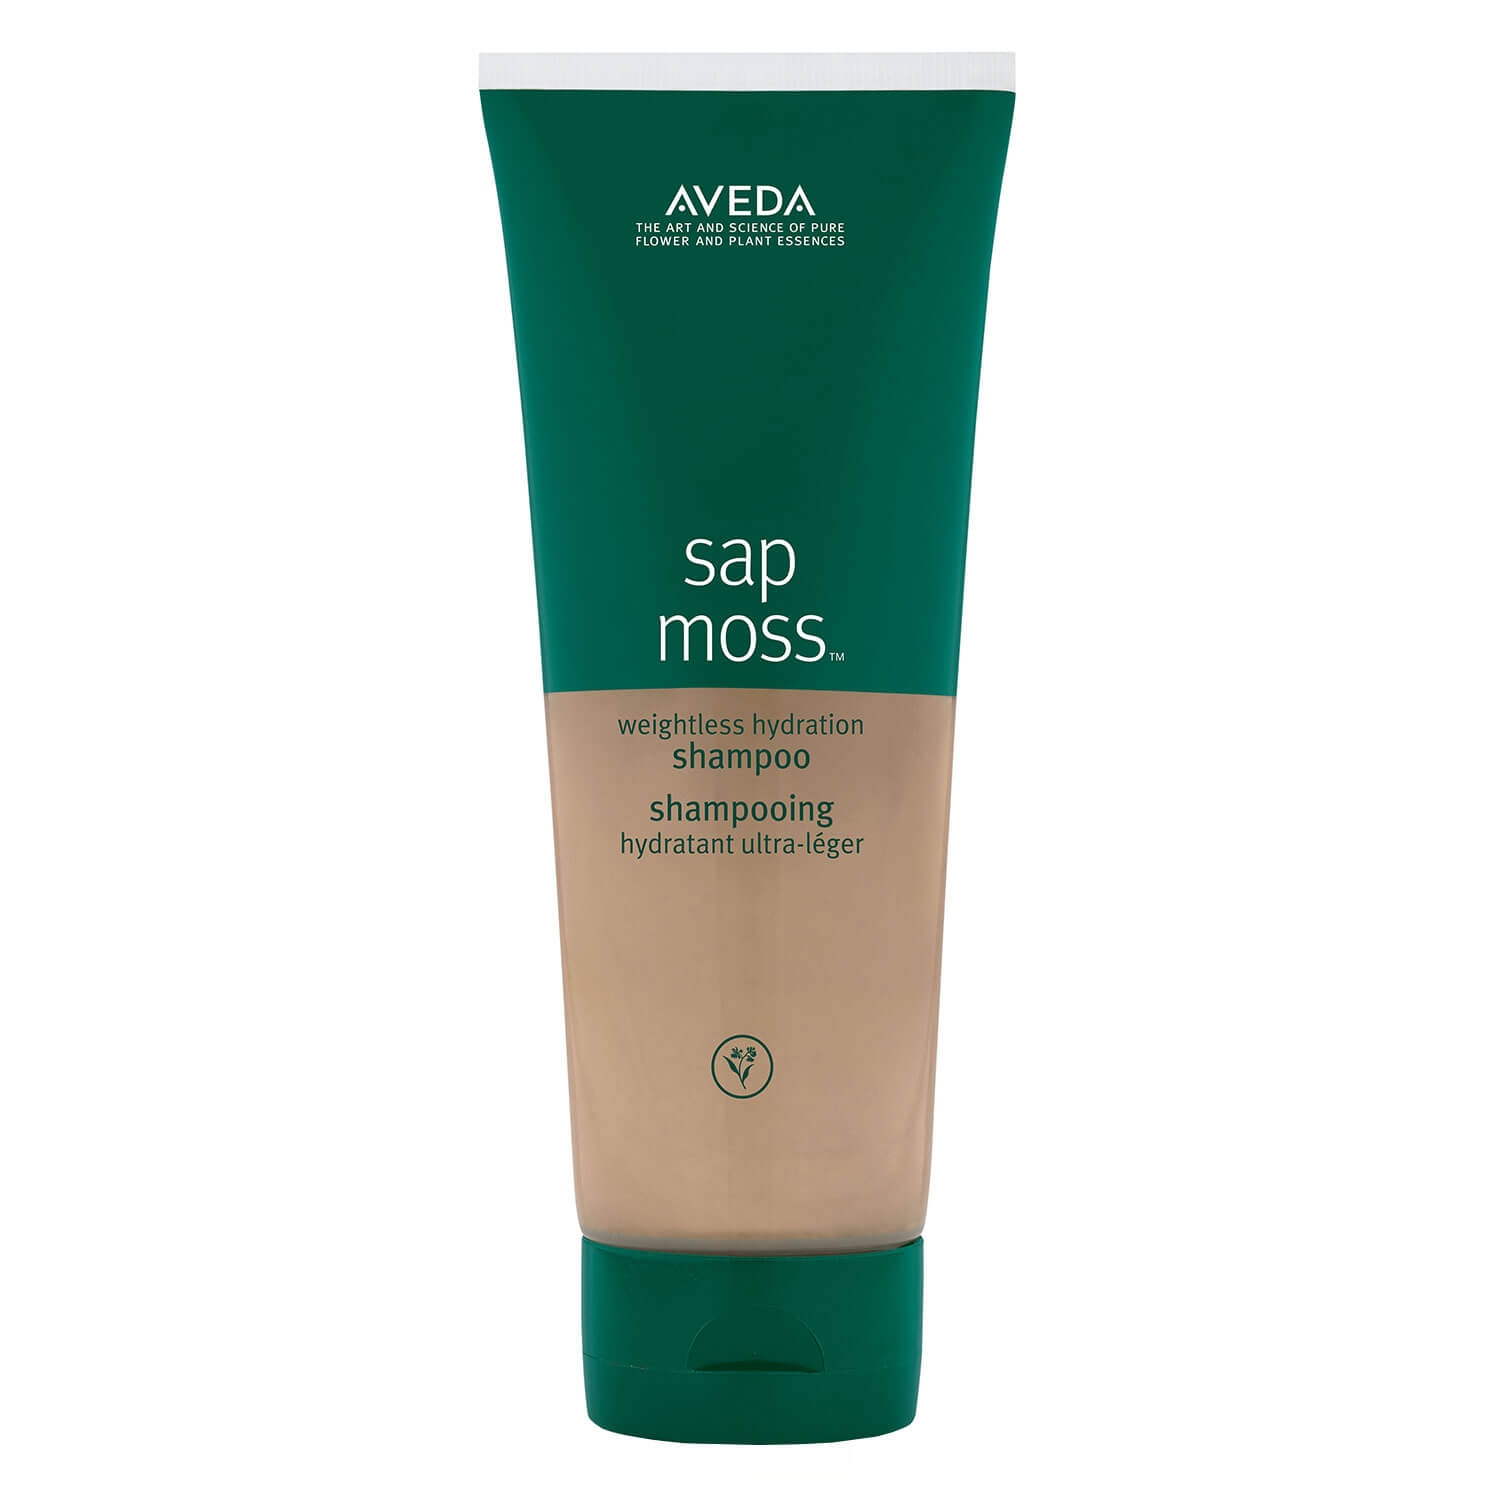 Produktbild von sap moss - weightless hydration shampoo